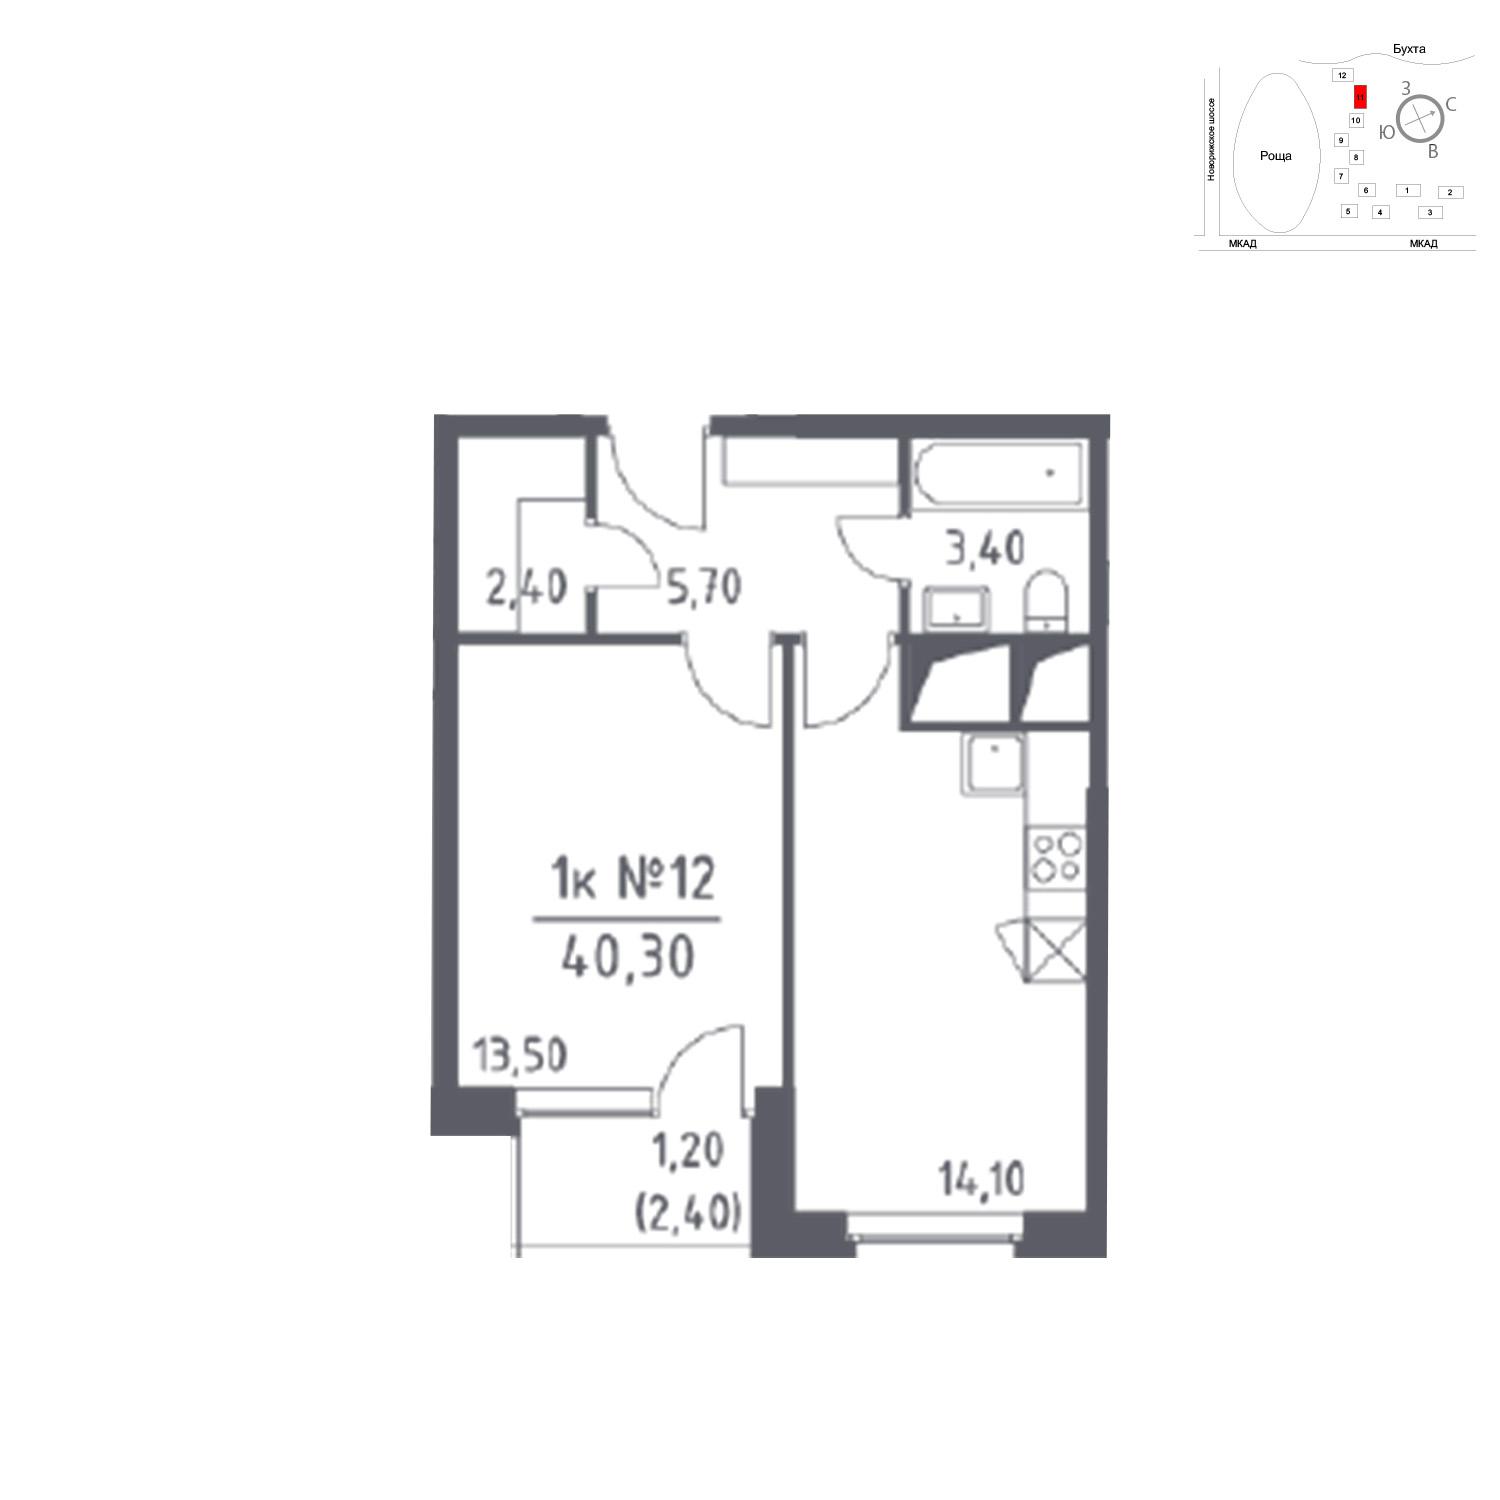 Продаётся 1-комнатная квартира в новостройке 40.3 кв.м. этаж 23/33 за 0 руб 